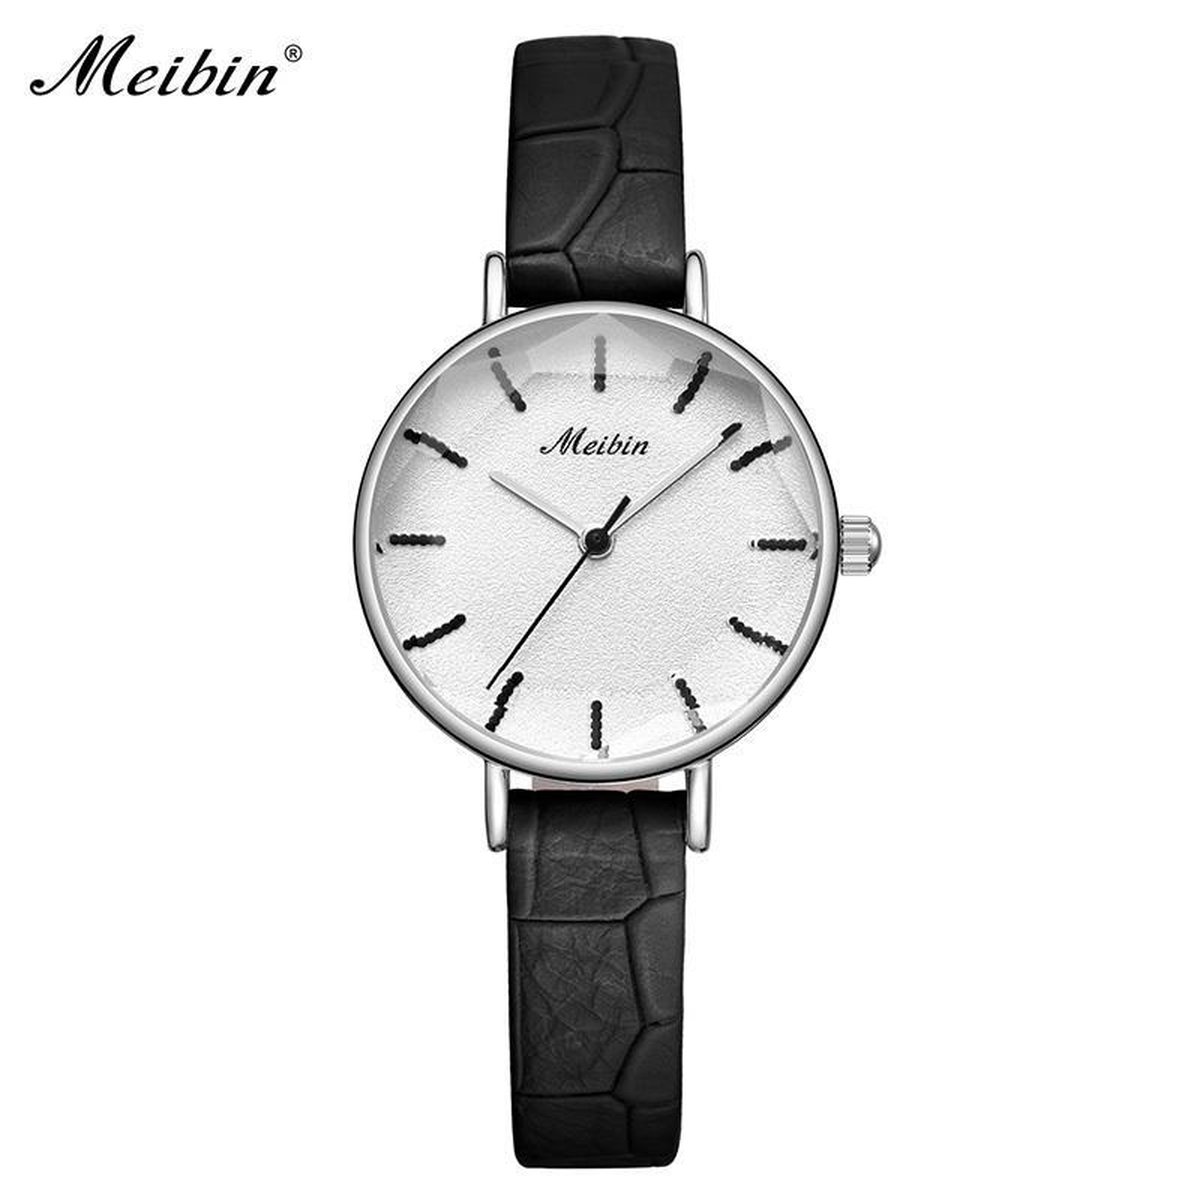 Longbo - Meibin - Dames Horloge - Zwart/Wit - 27mm